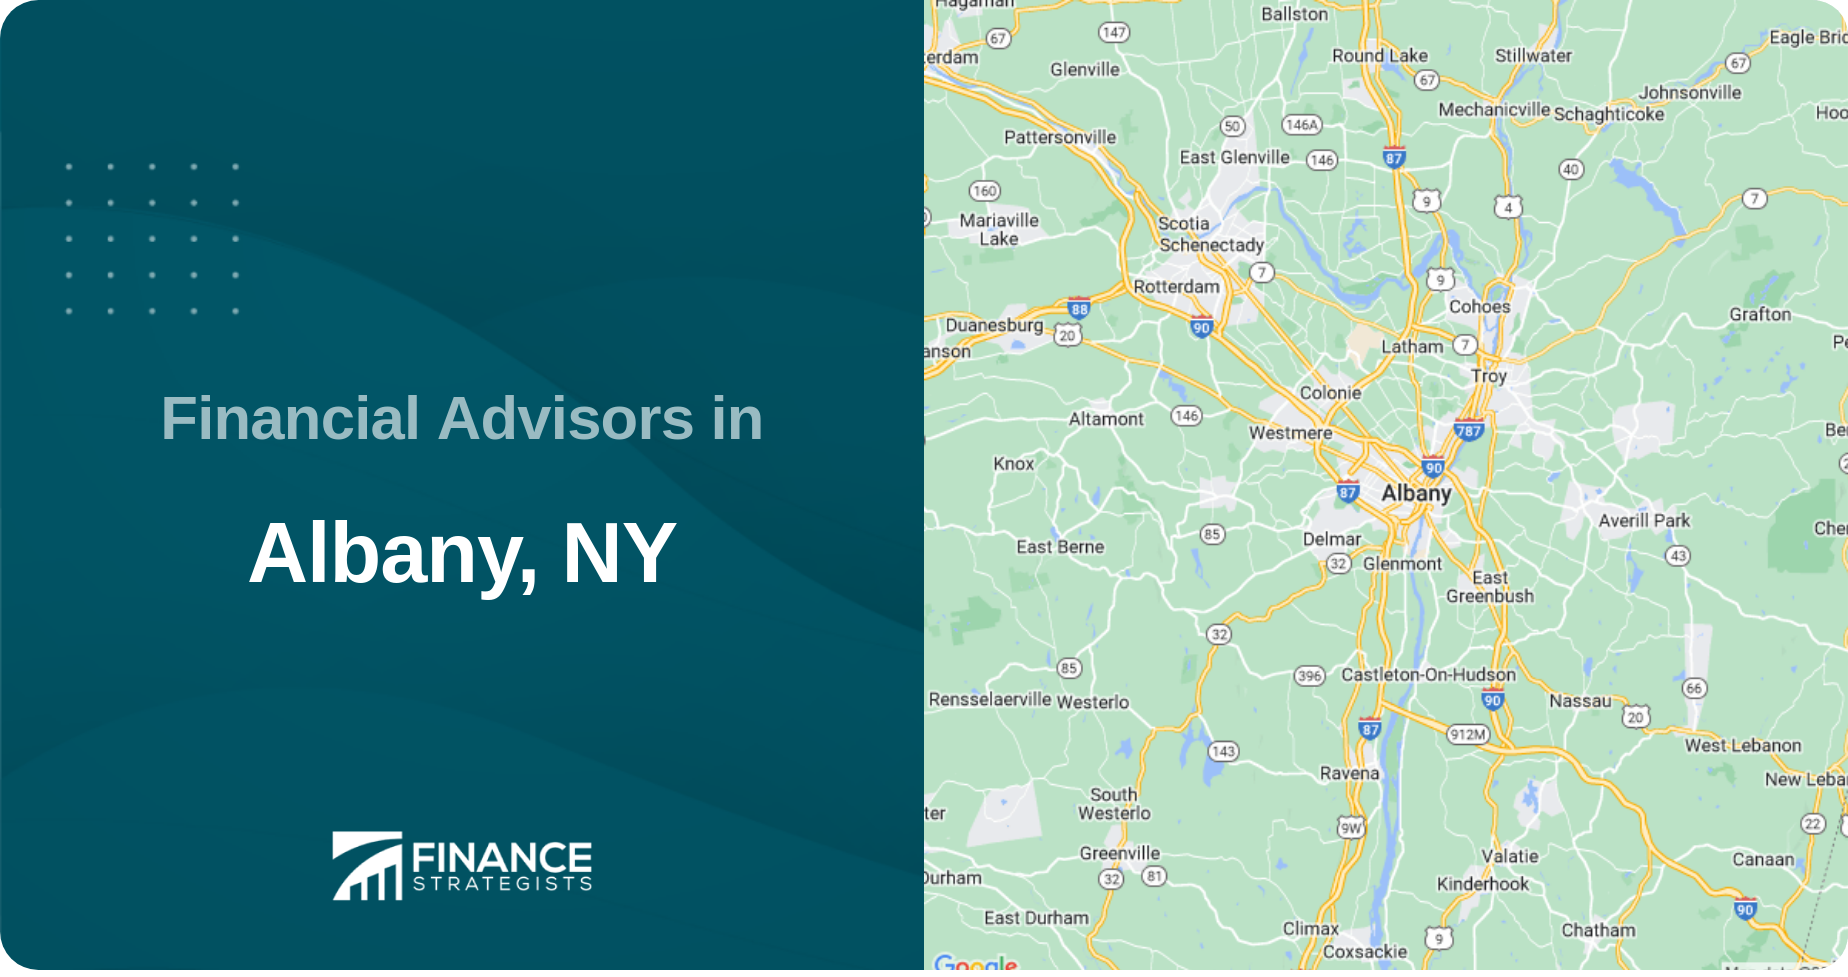 Financial Advisors in Albany, NY